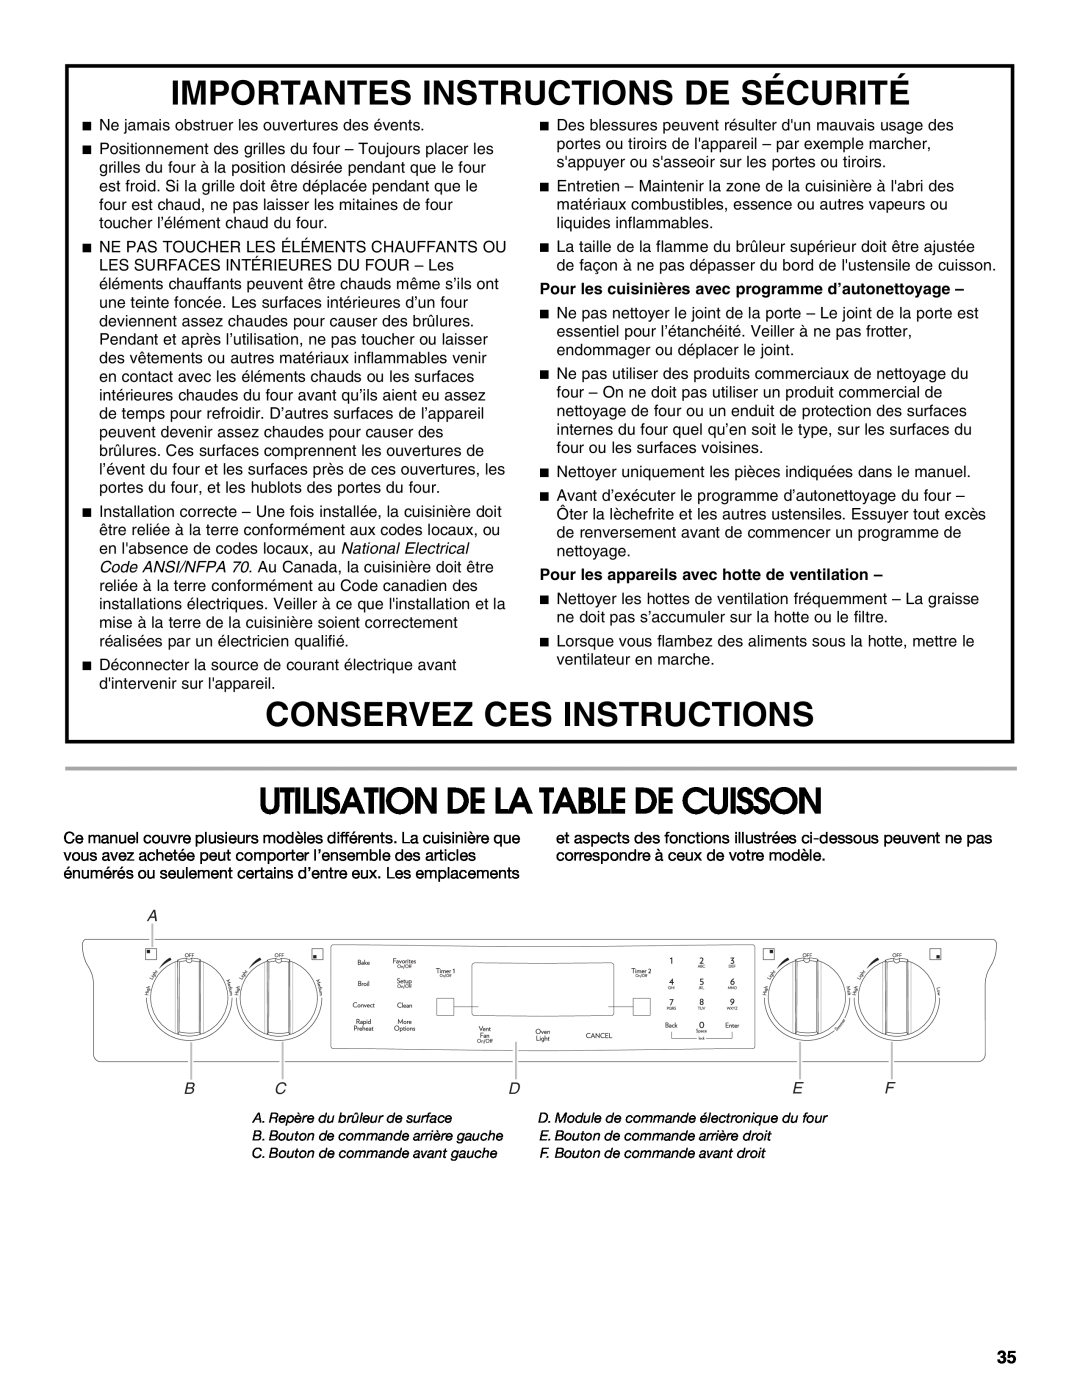 Jenn-Air JD59860 Utilisation De La Table De Cuisson, Importantes Instructions De Sécurité, Conservez Ces Instructions 